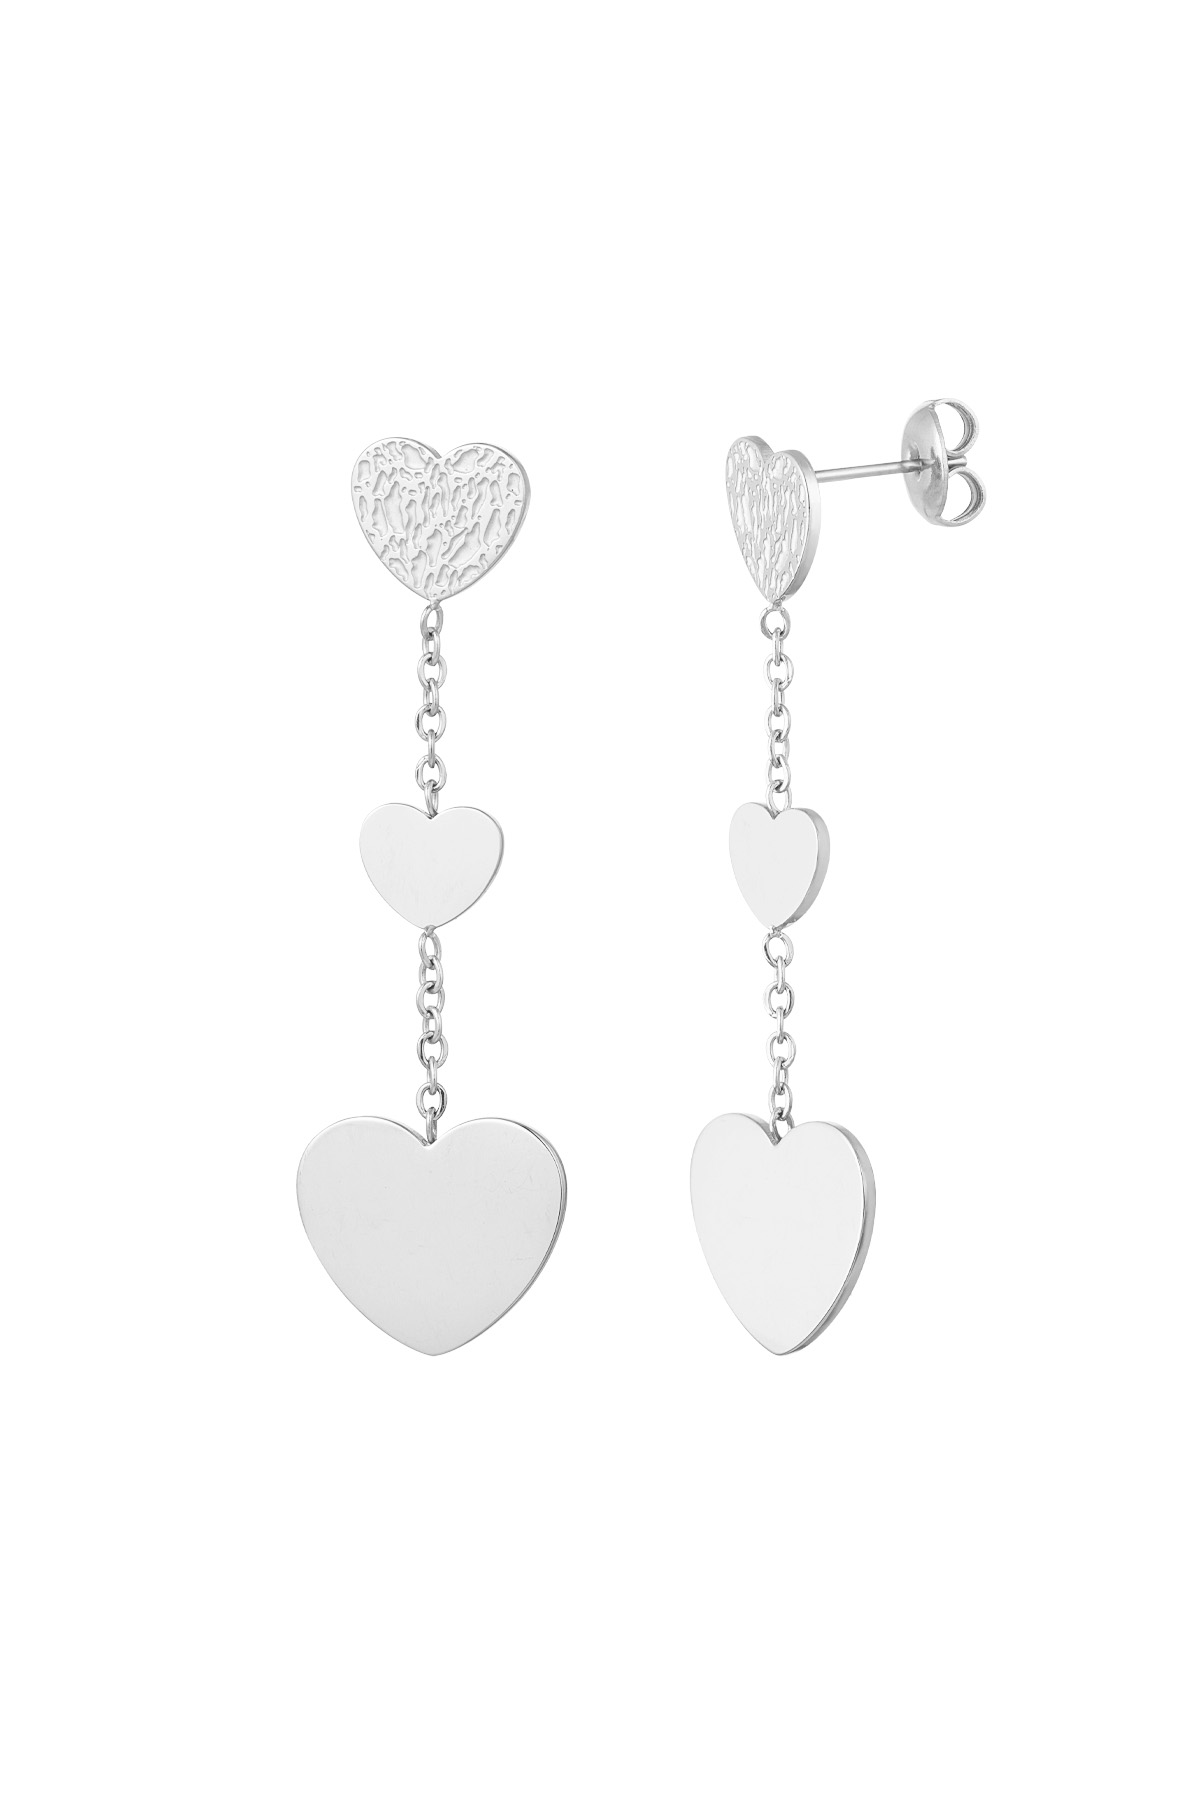 Earrings double the love - silver